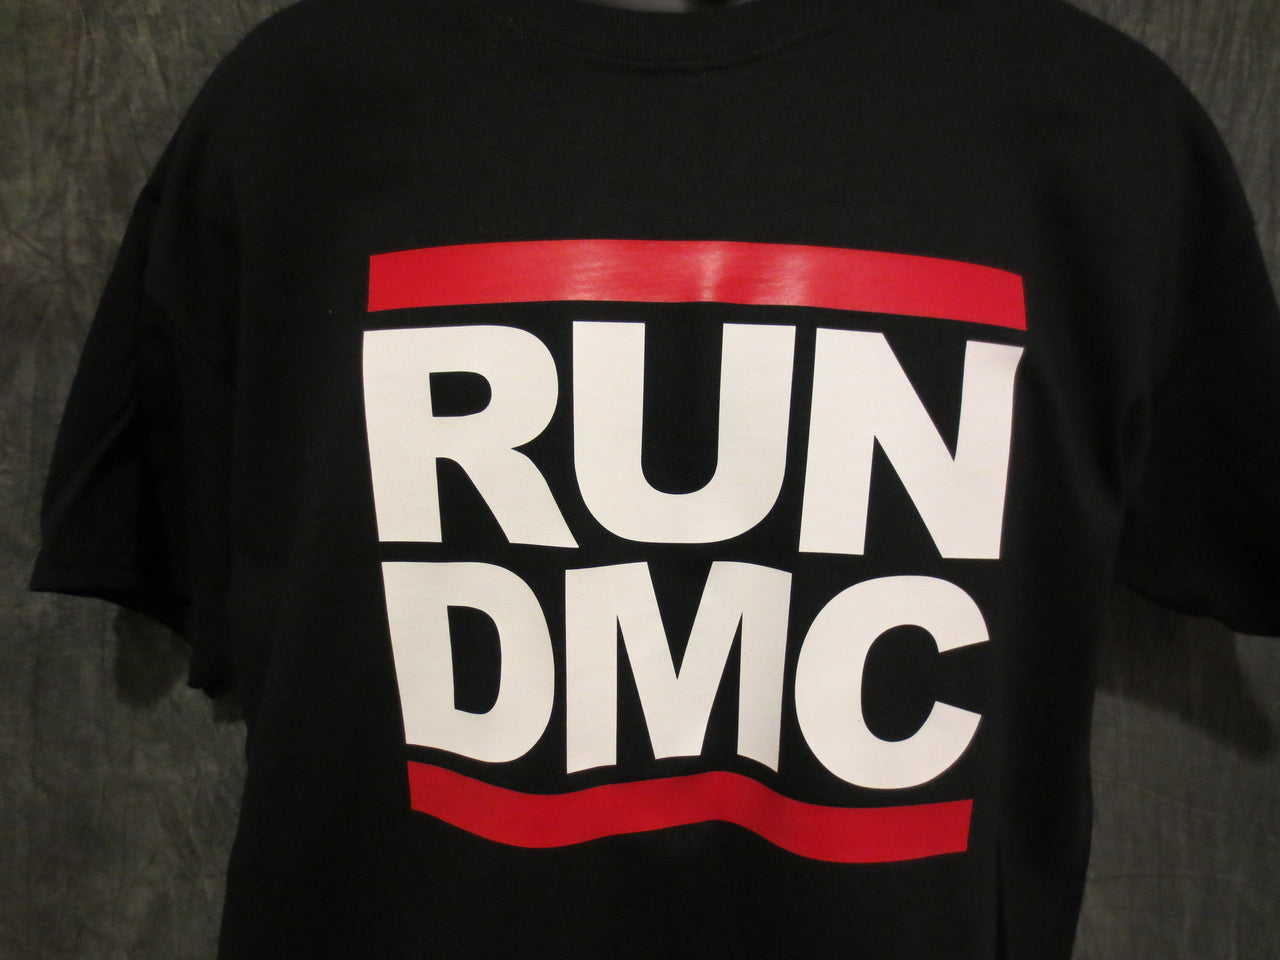 Run Dmc Logo Black Tshirt - TshirtNow.net - 3